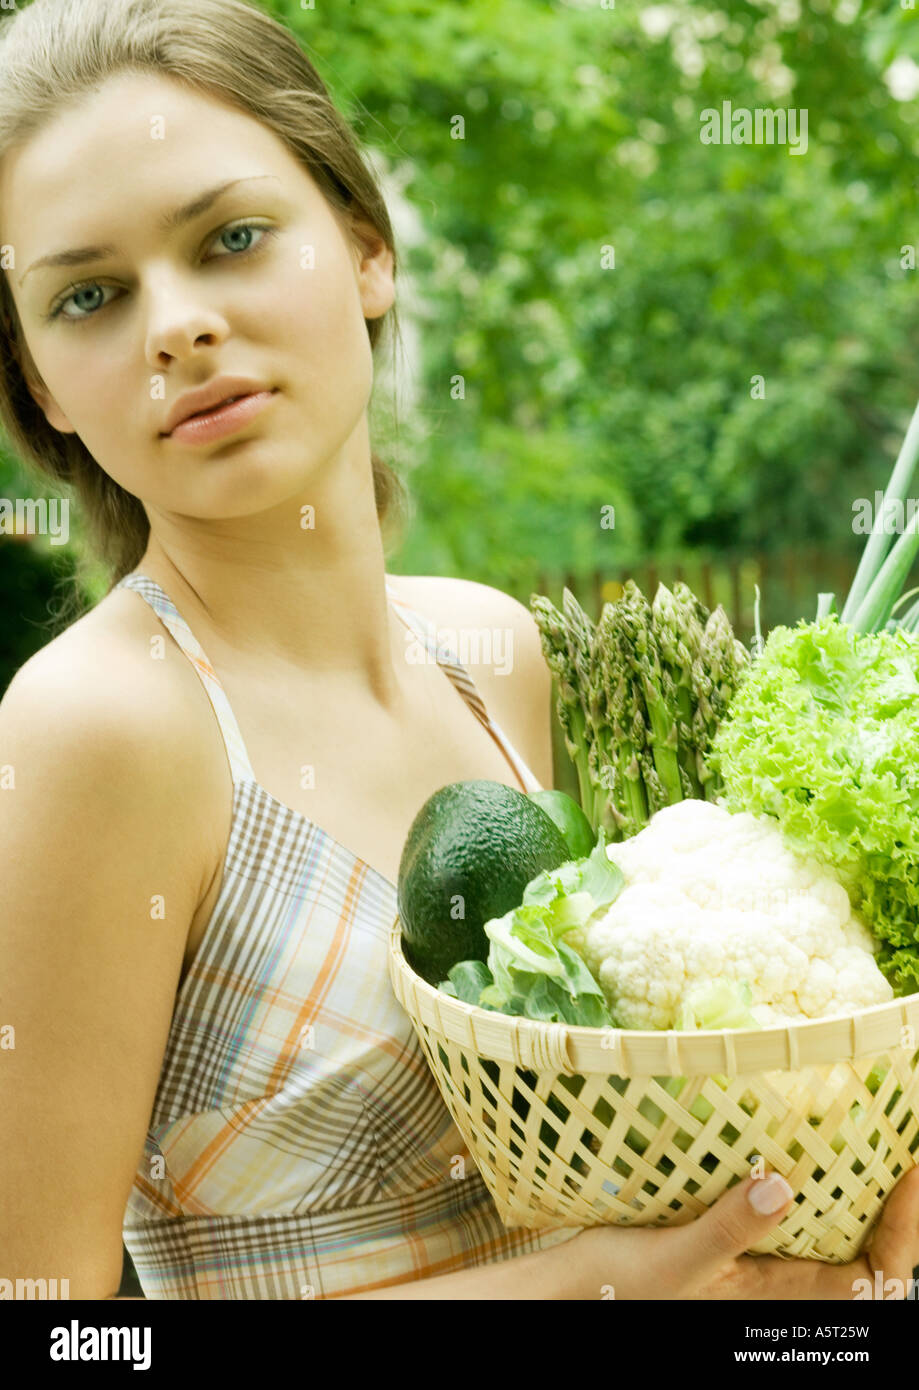 Frau mit Korb voll mit frischem Gemüse Stockfoto